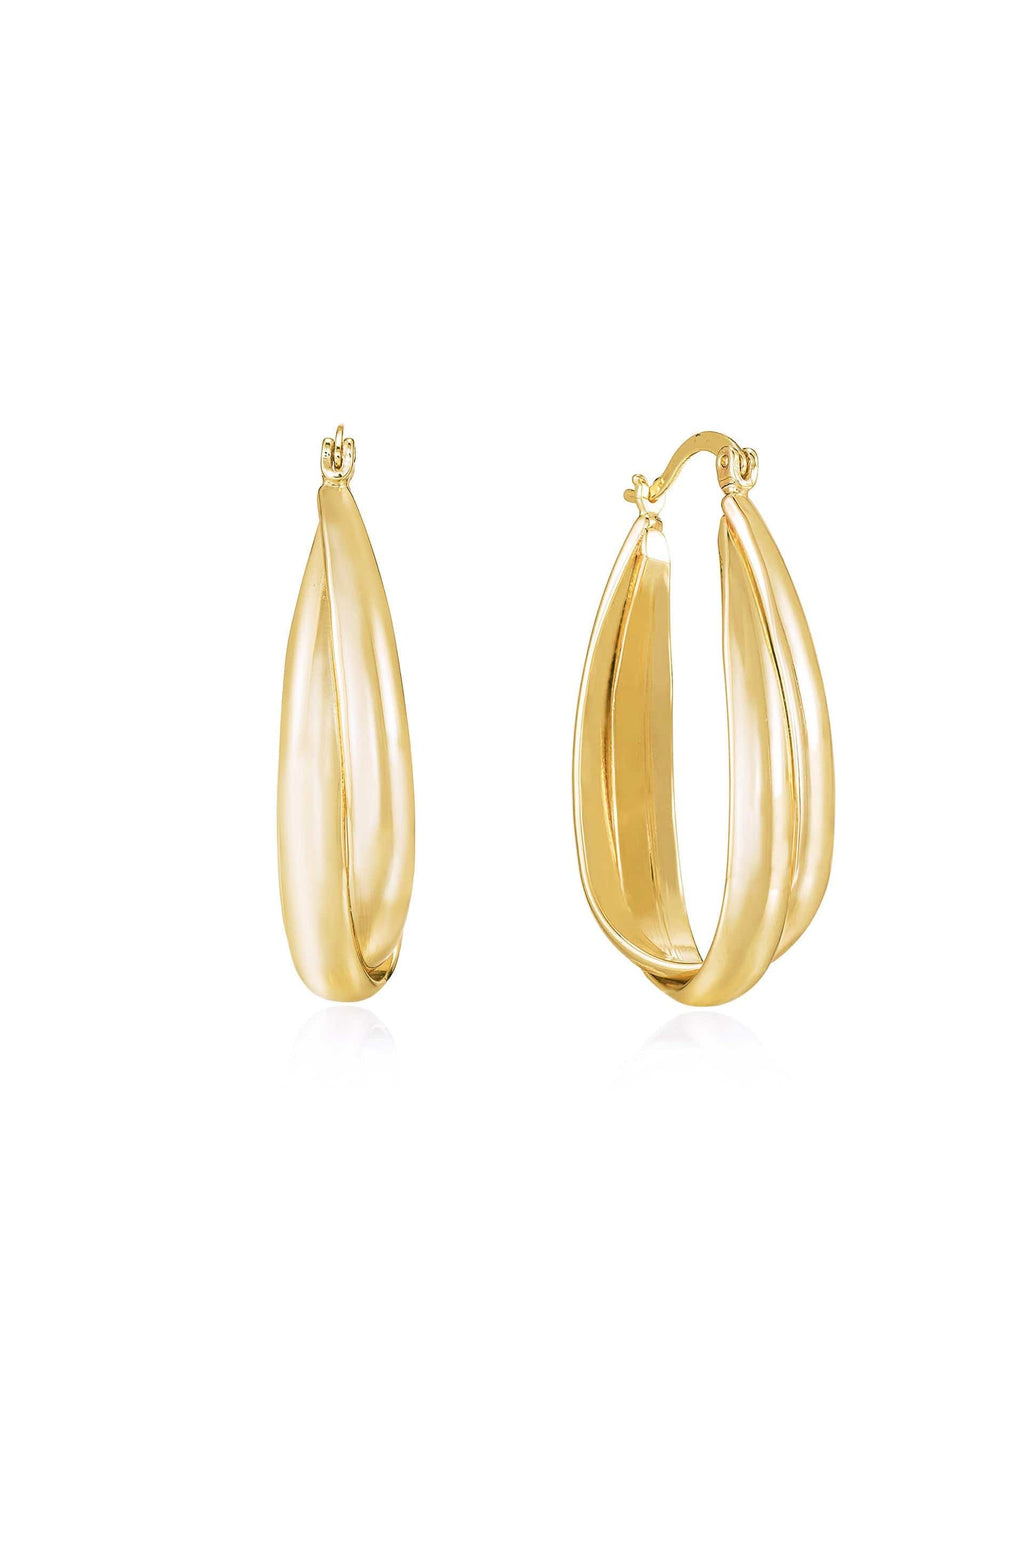 Ettika Earrings 18k Gold Plated / One Size Everyday Oval 18k Gold Plated Hoop Earrings